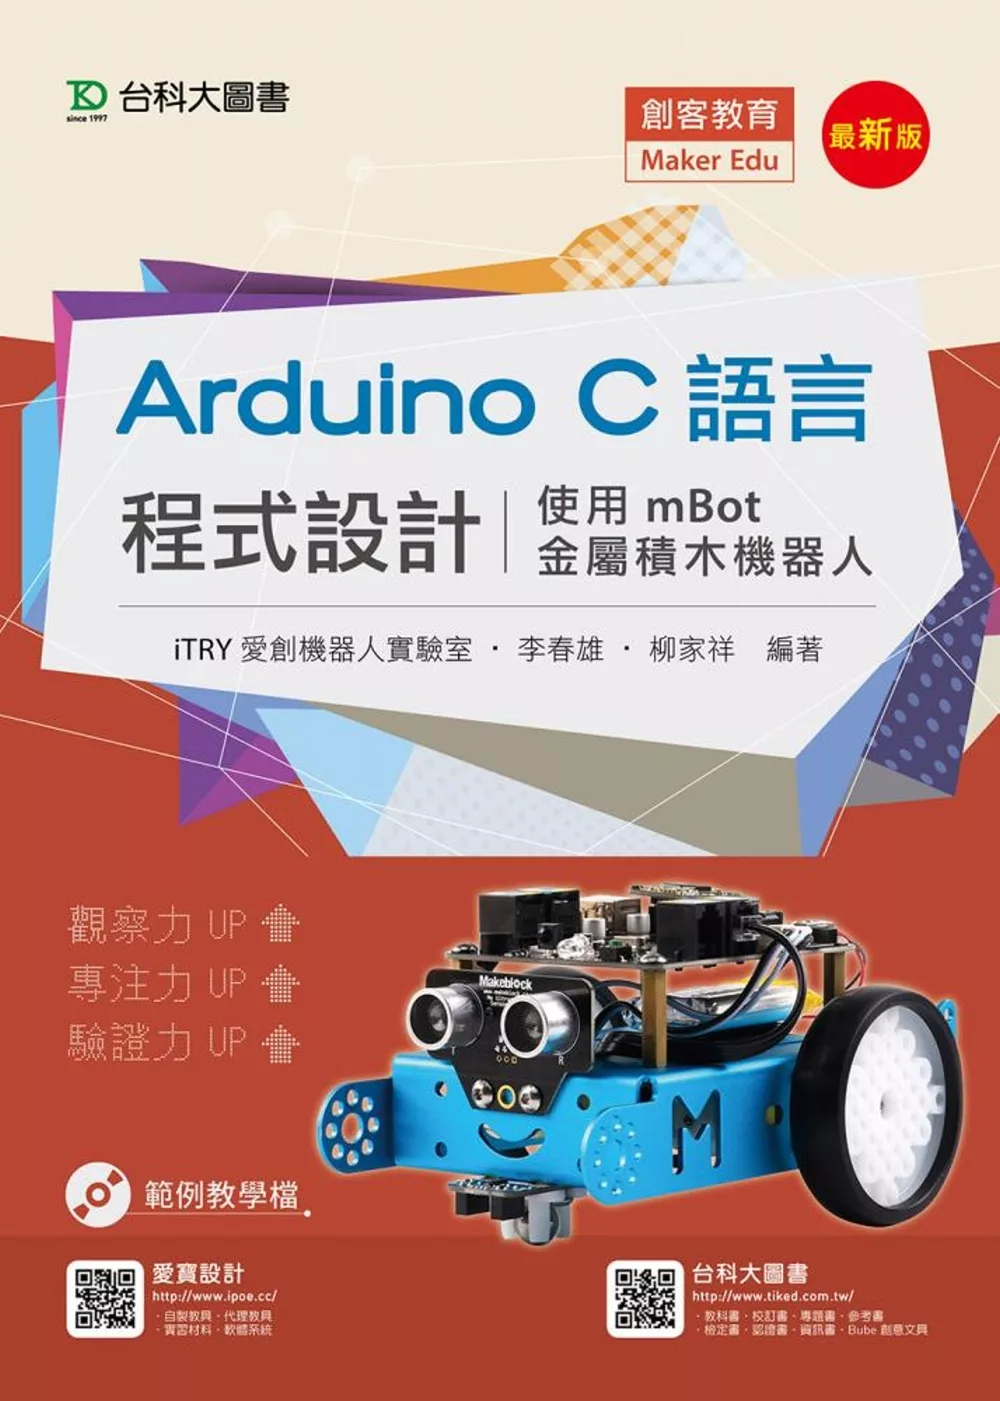 Arduino C語言程式設計 - 使用mBot金屬積木機器人 - 最新版